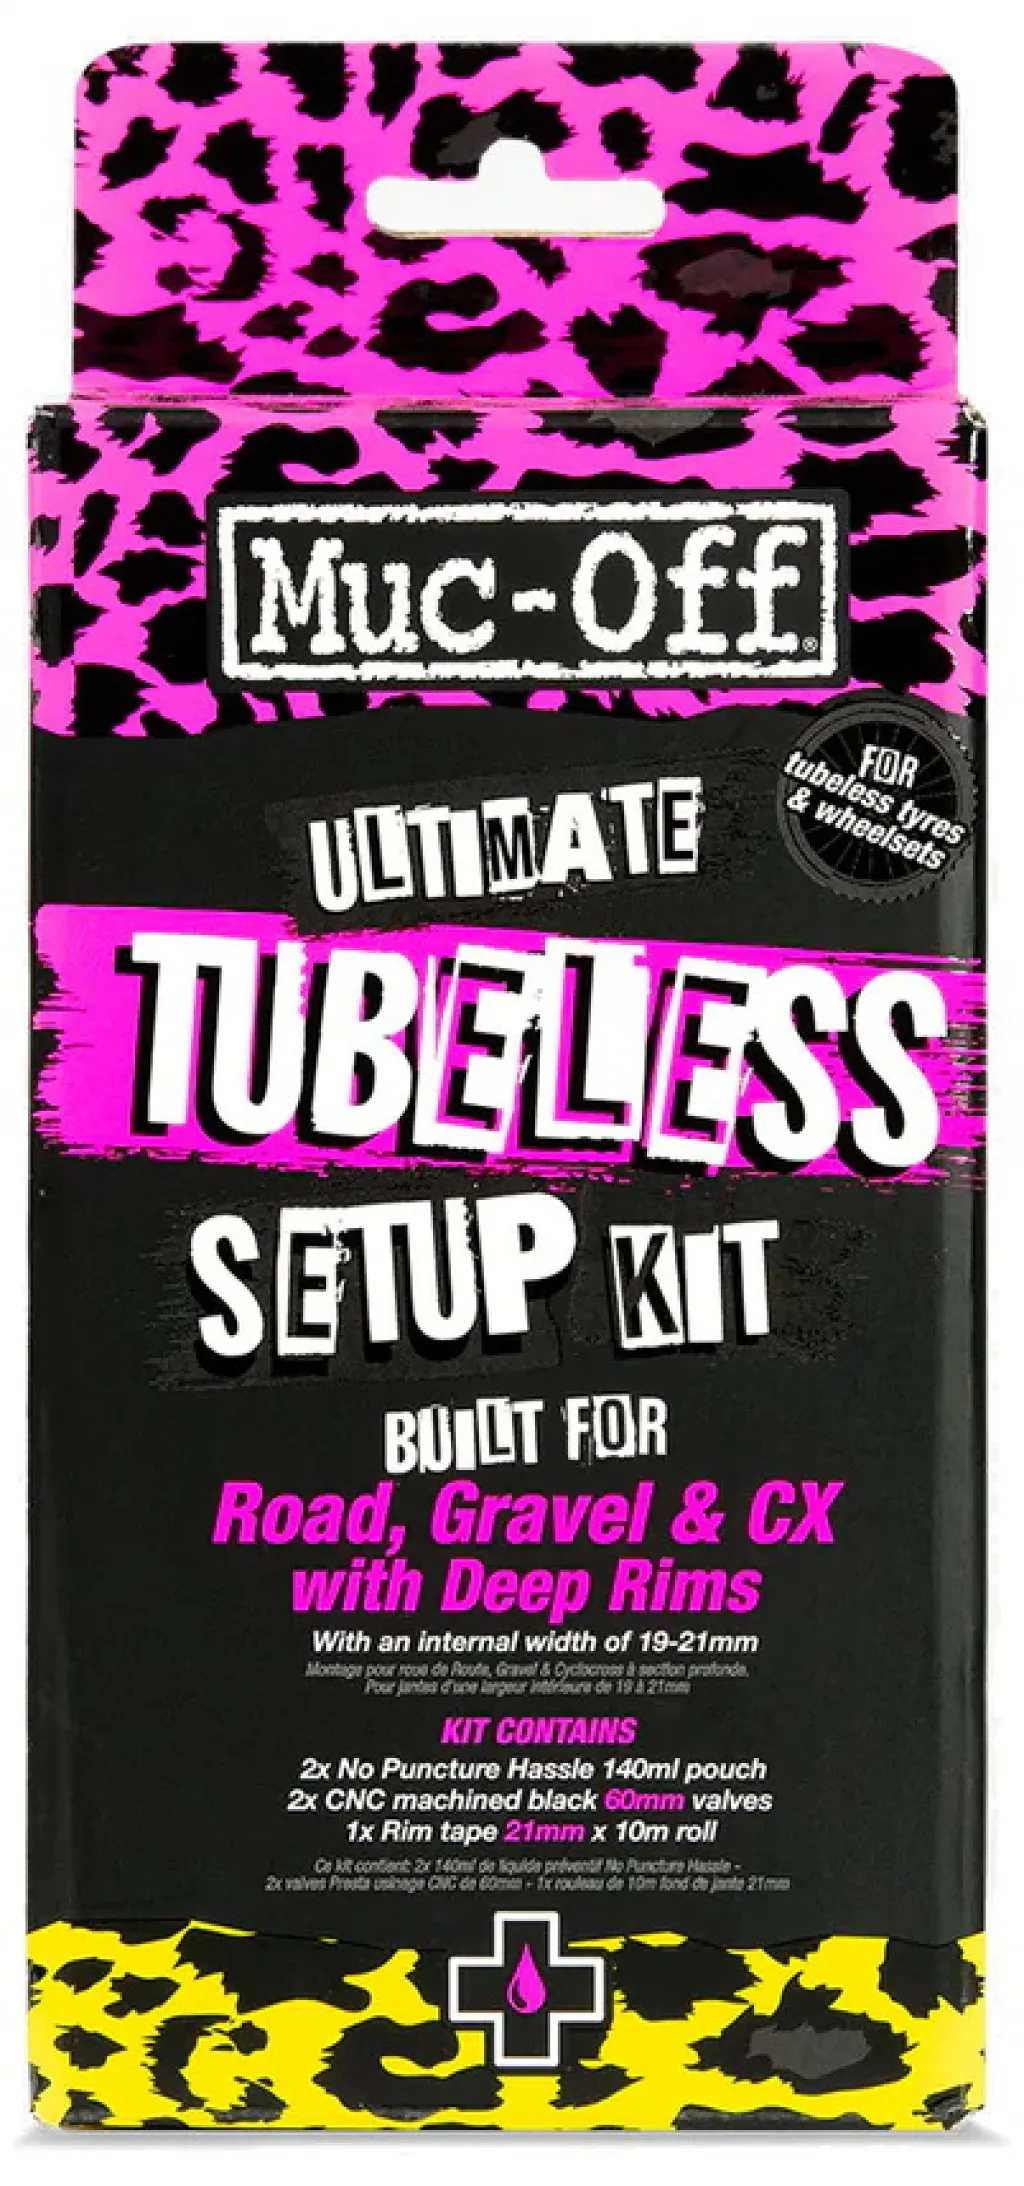 Набор (комплект) для безкамерки Muc-Off Ultimate Tubeless Setup Kit (лента 21mm, ниппели 60mm) ROAD